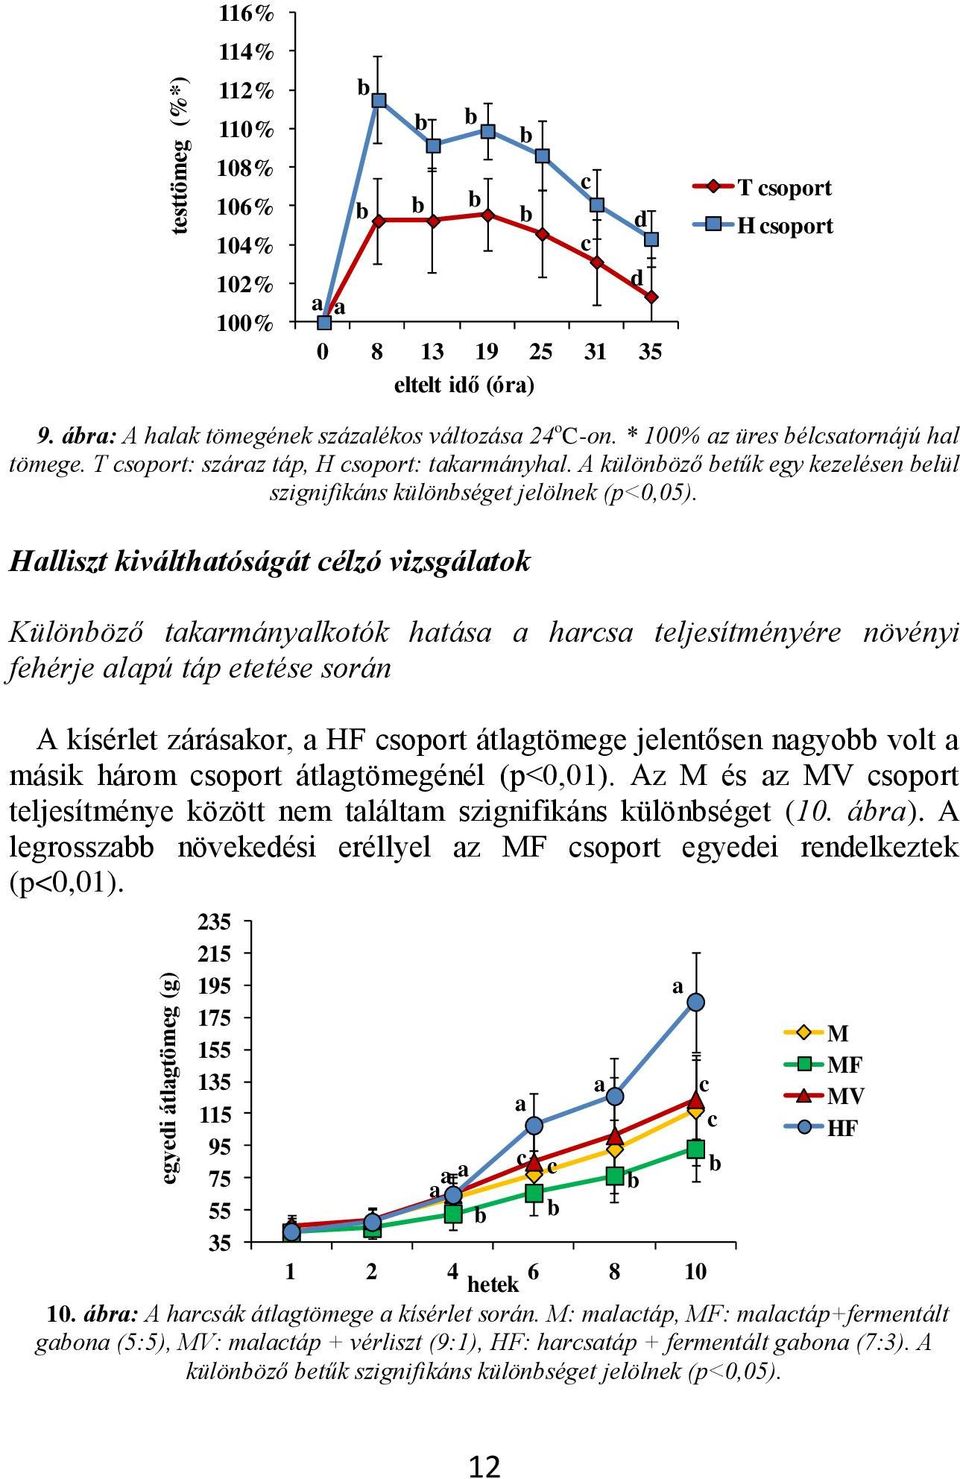 Hlliszt kiválthtóságát célzó vizsgáltok Különöző tkrmánylkotók htás hrcs teljesítményére növényi fehérje lpú táp etetése során A kísérlet záráskor, HF csoport átlgtömege jelentősen ngyo volt másik